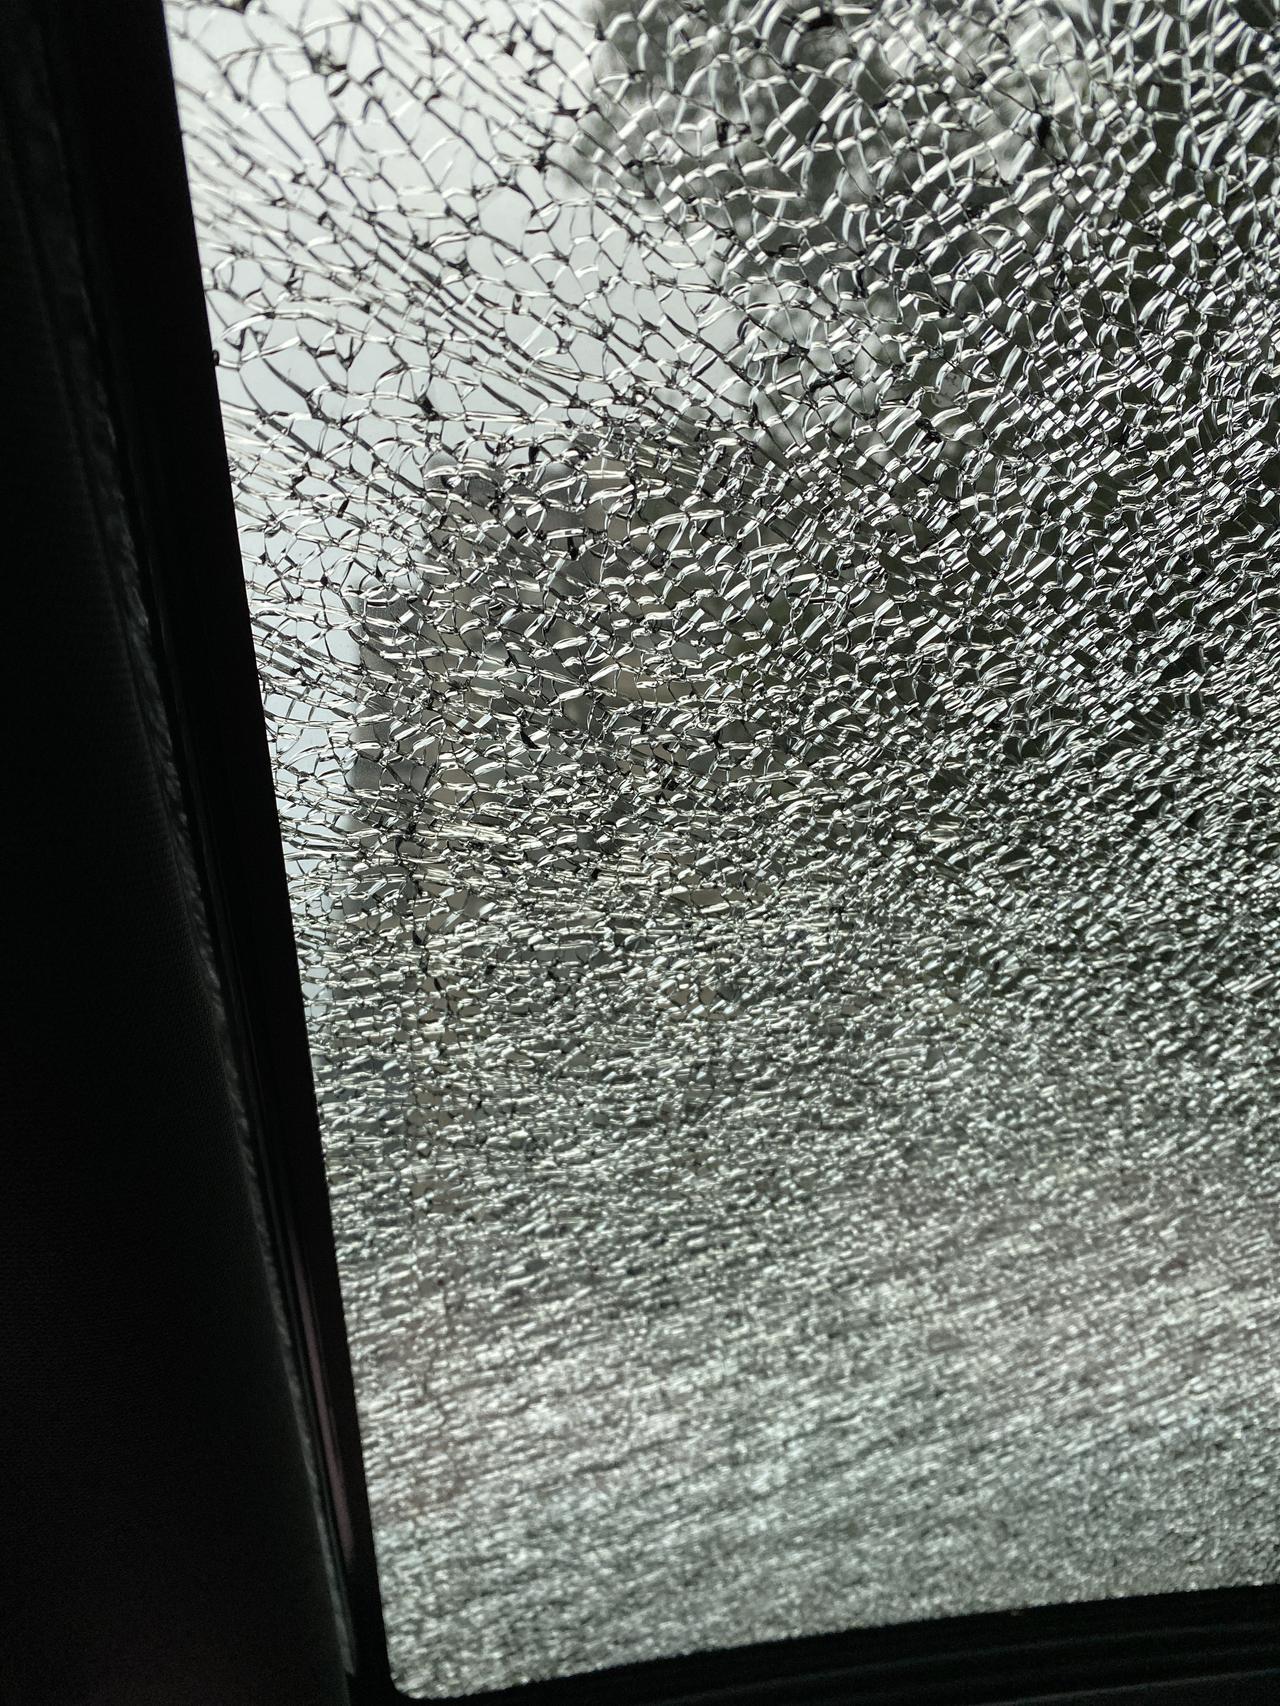 吉利缤越 刚买了三个月的新车 天窗玻璃碎了 怎么办。4s店负责吗